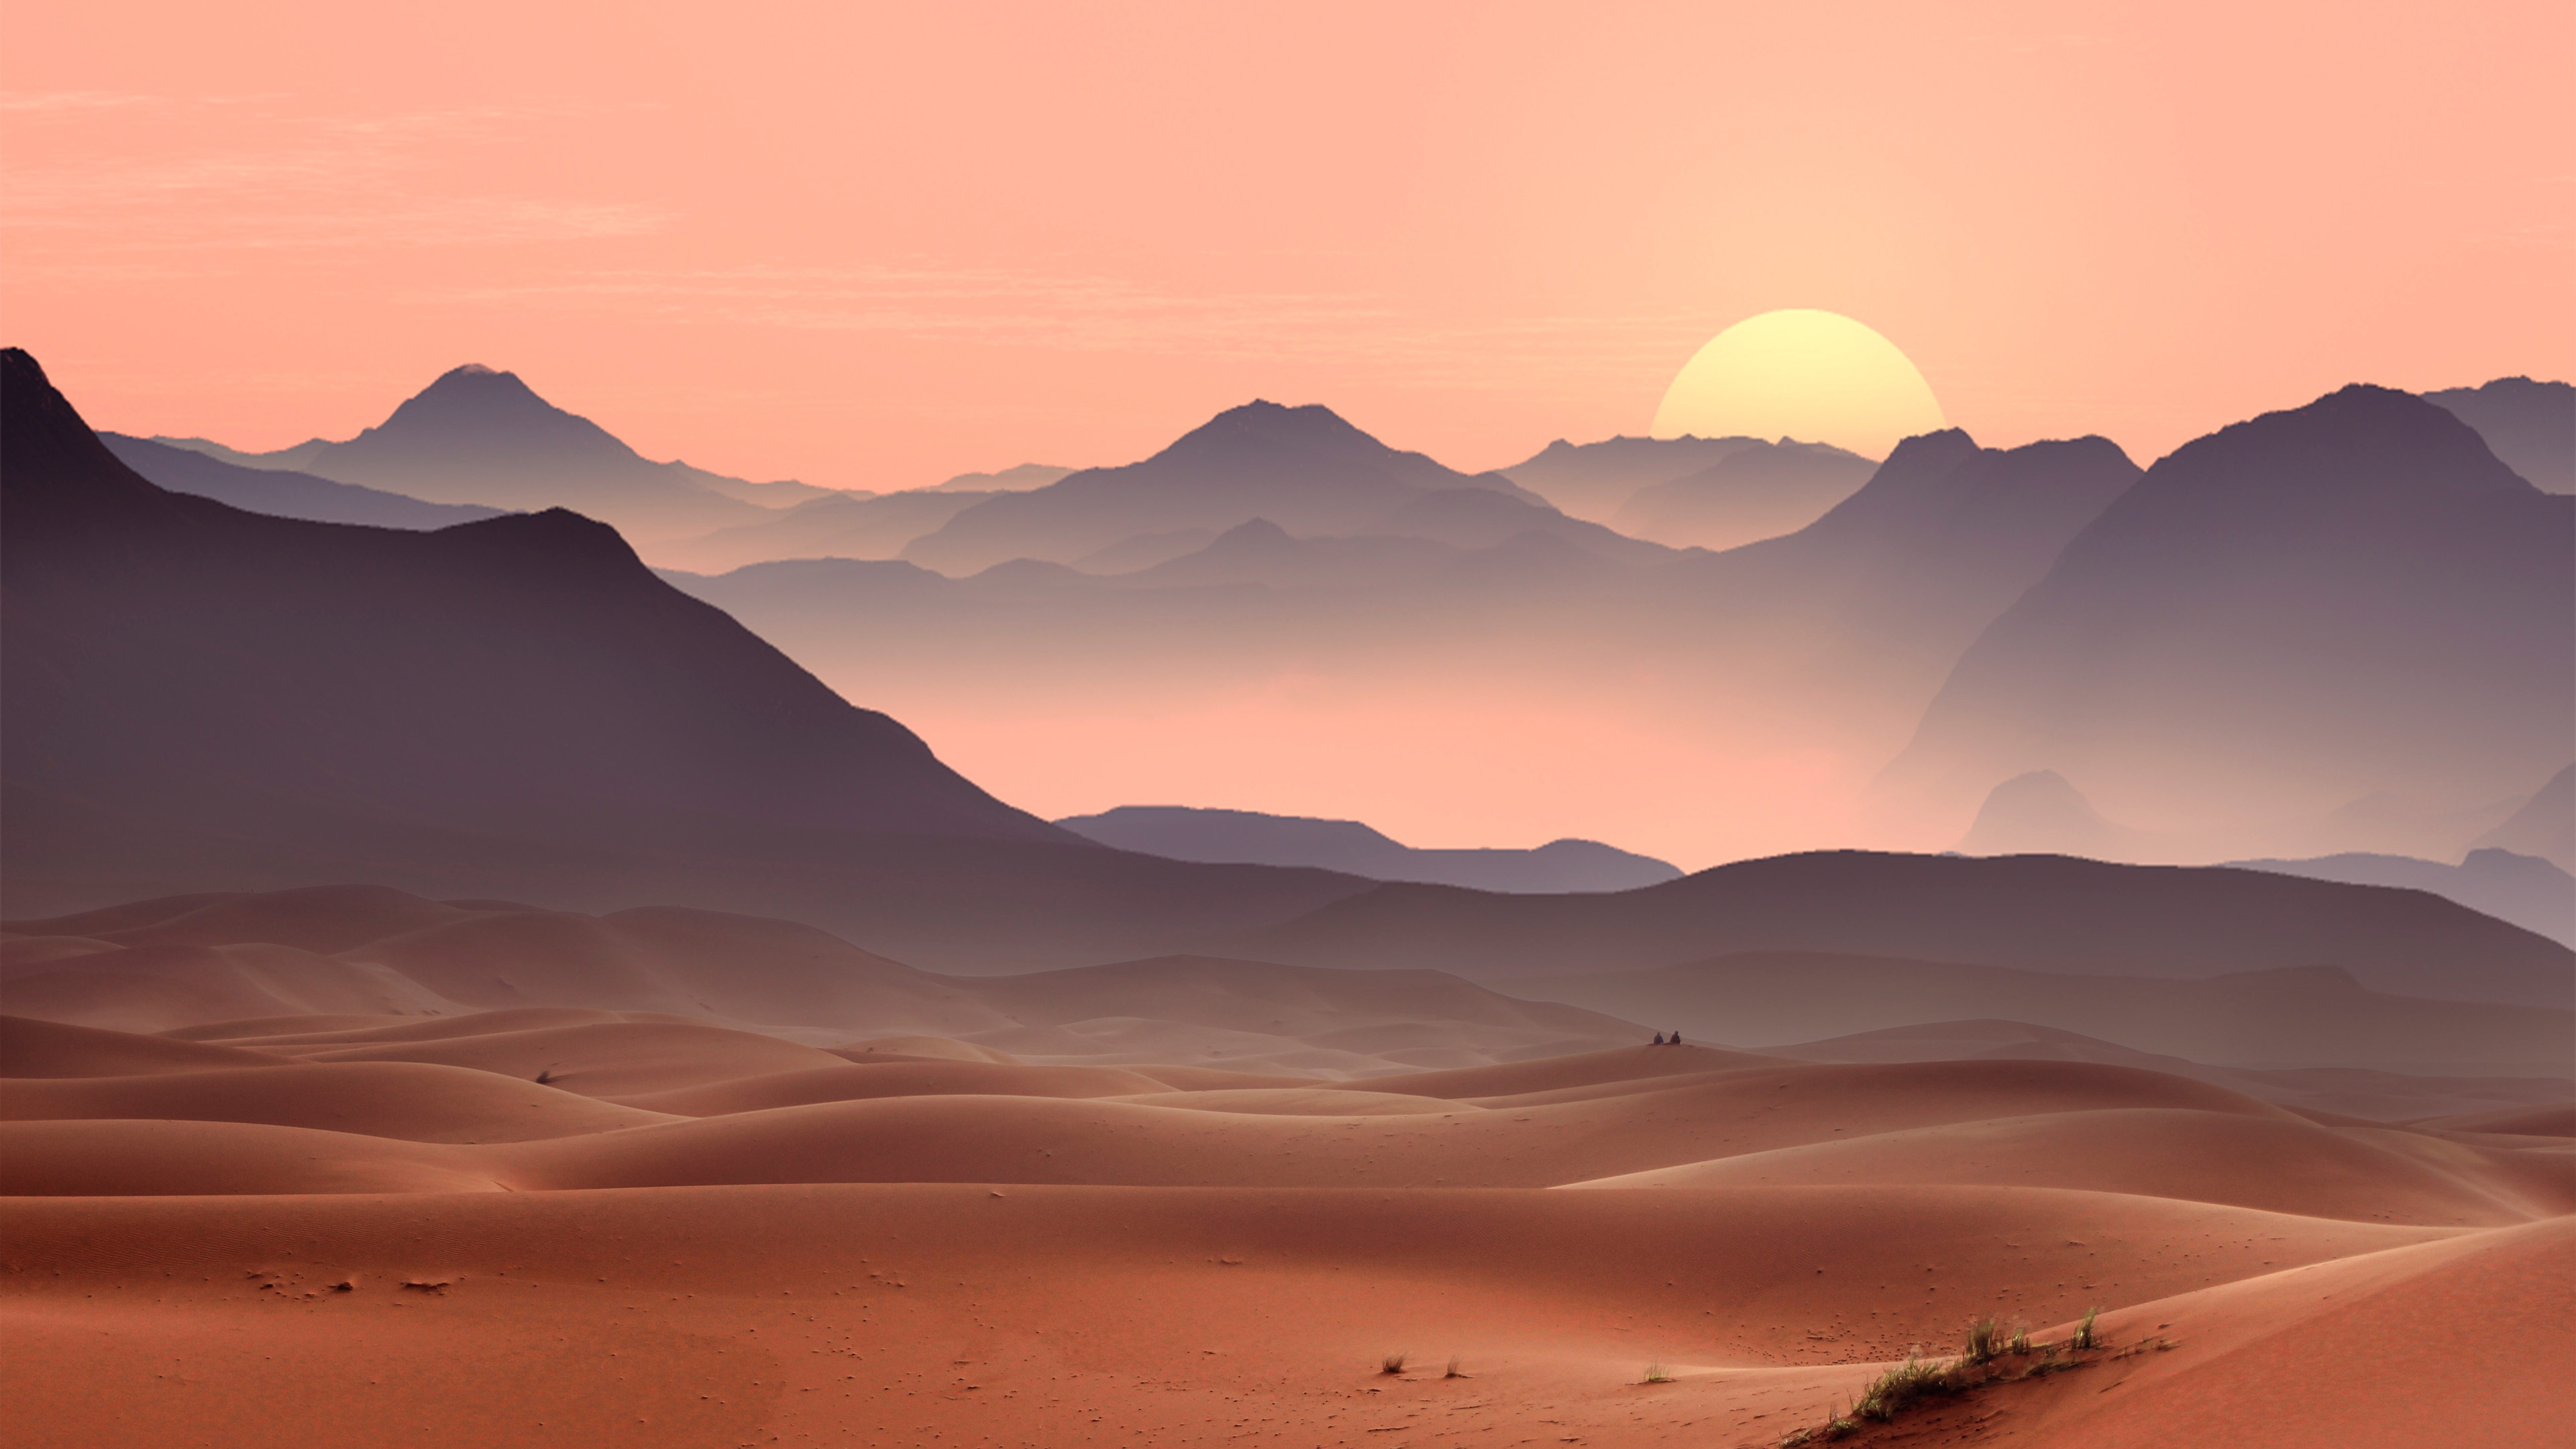 Sunset on the desert dunes wallpaper 3840x2160